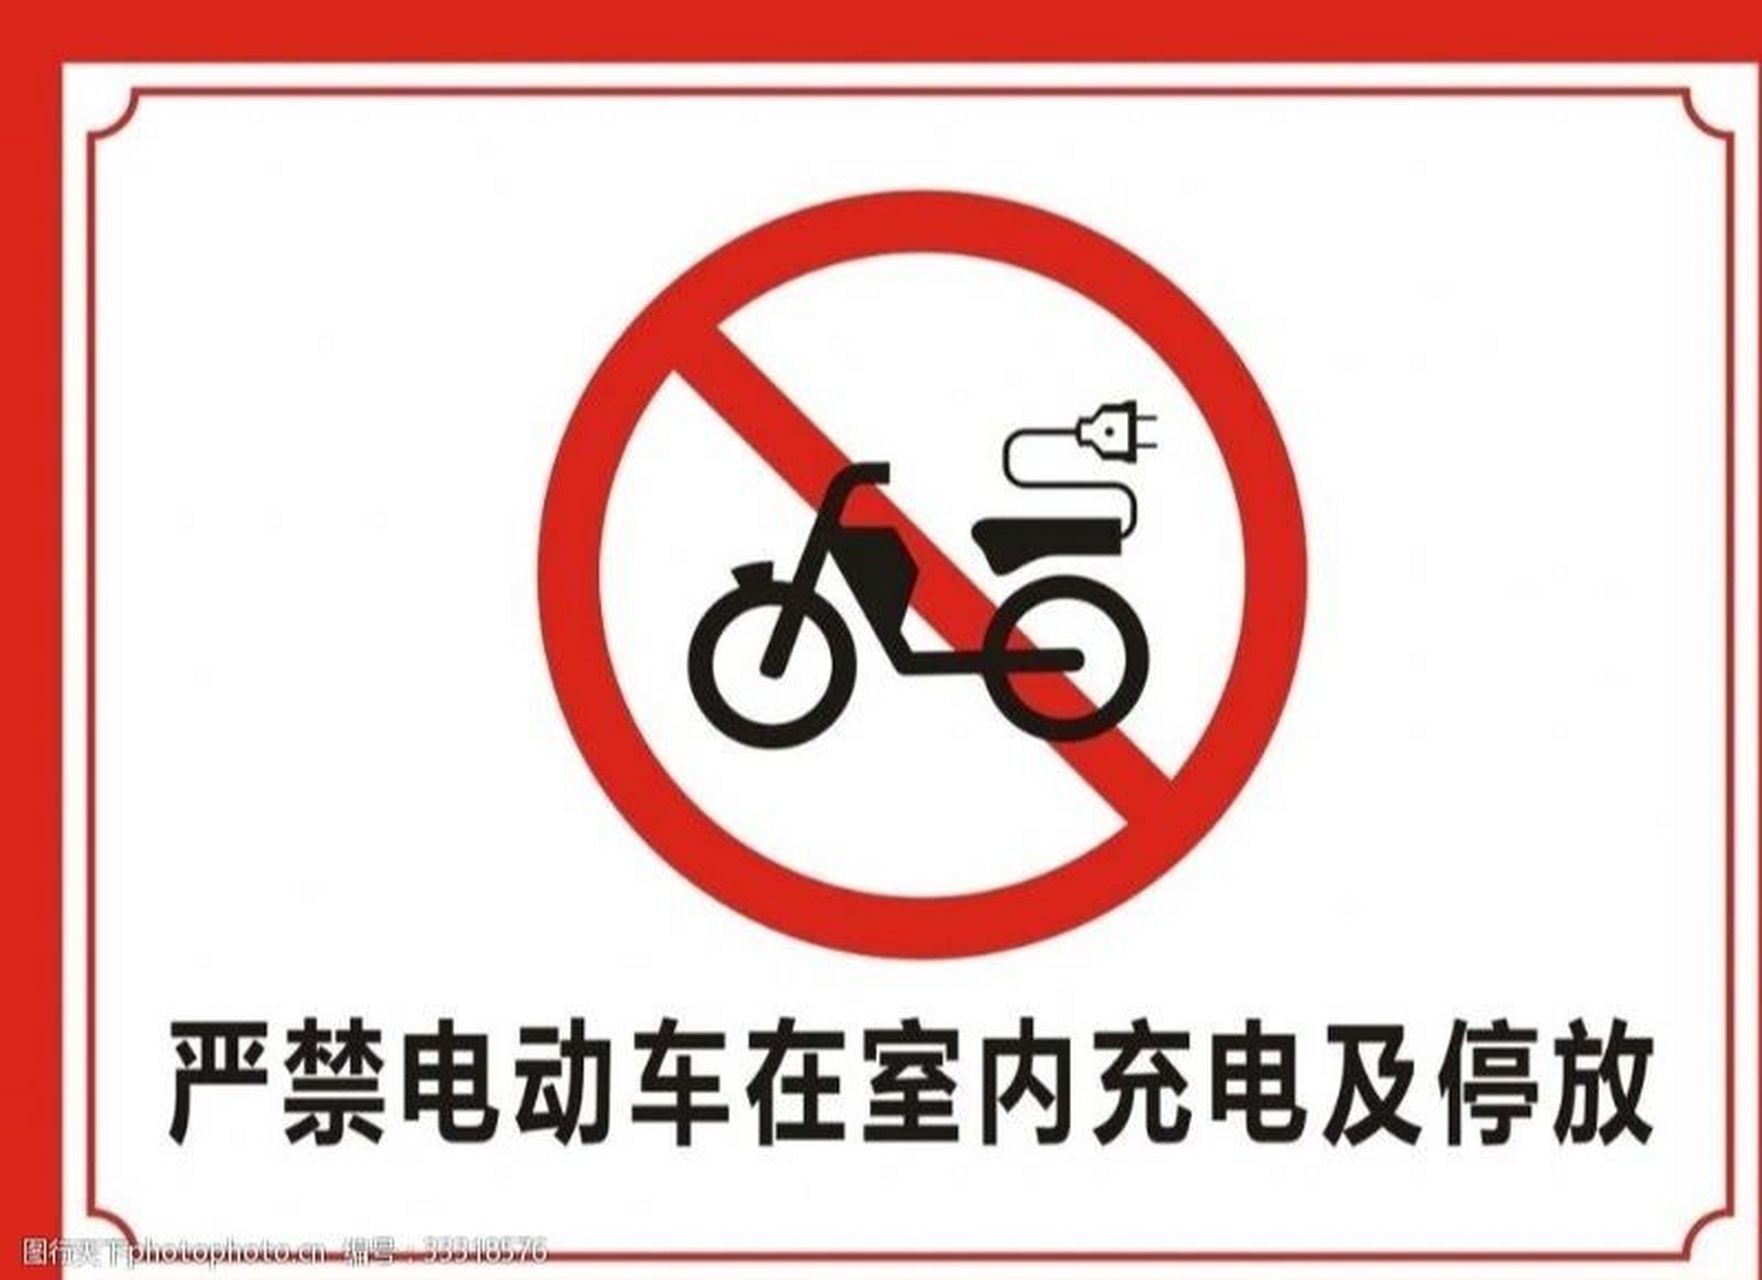 消防法电动车禁止上楼图片